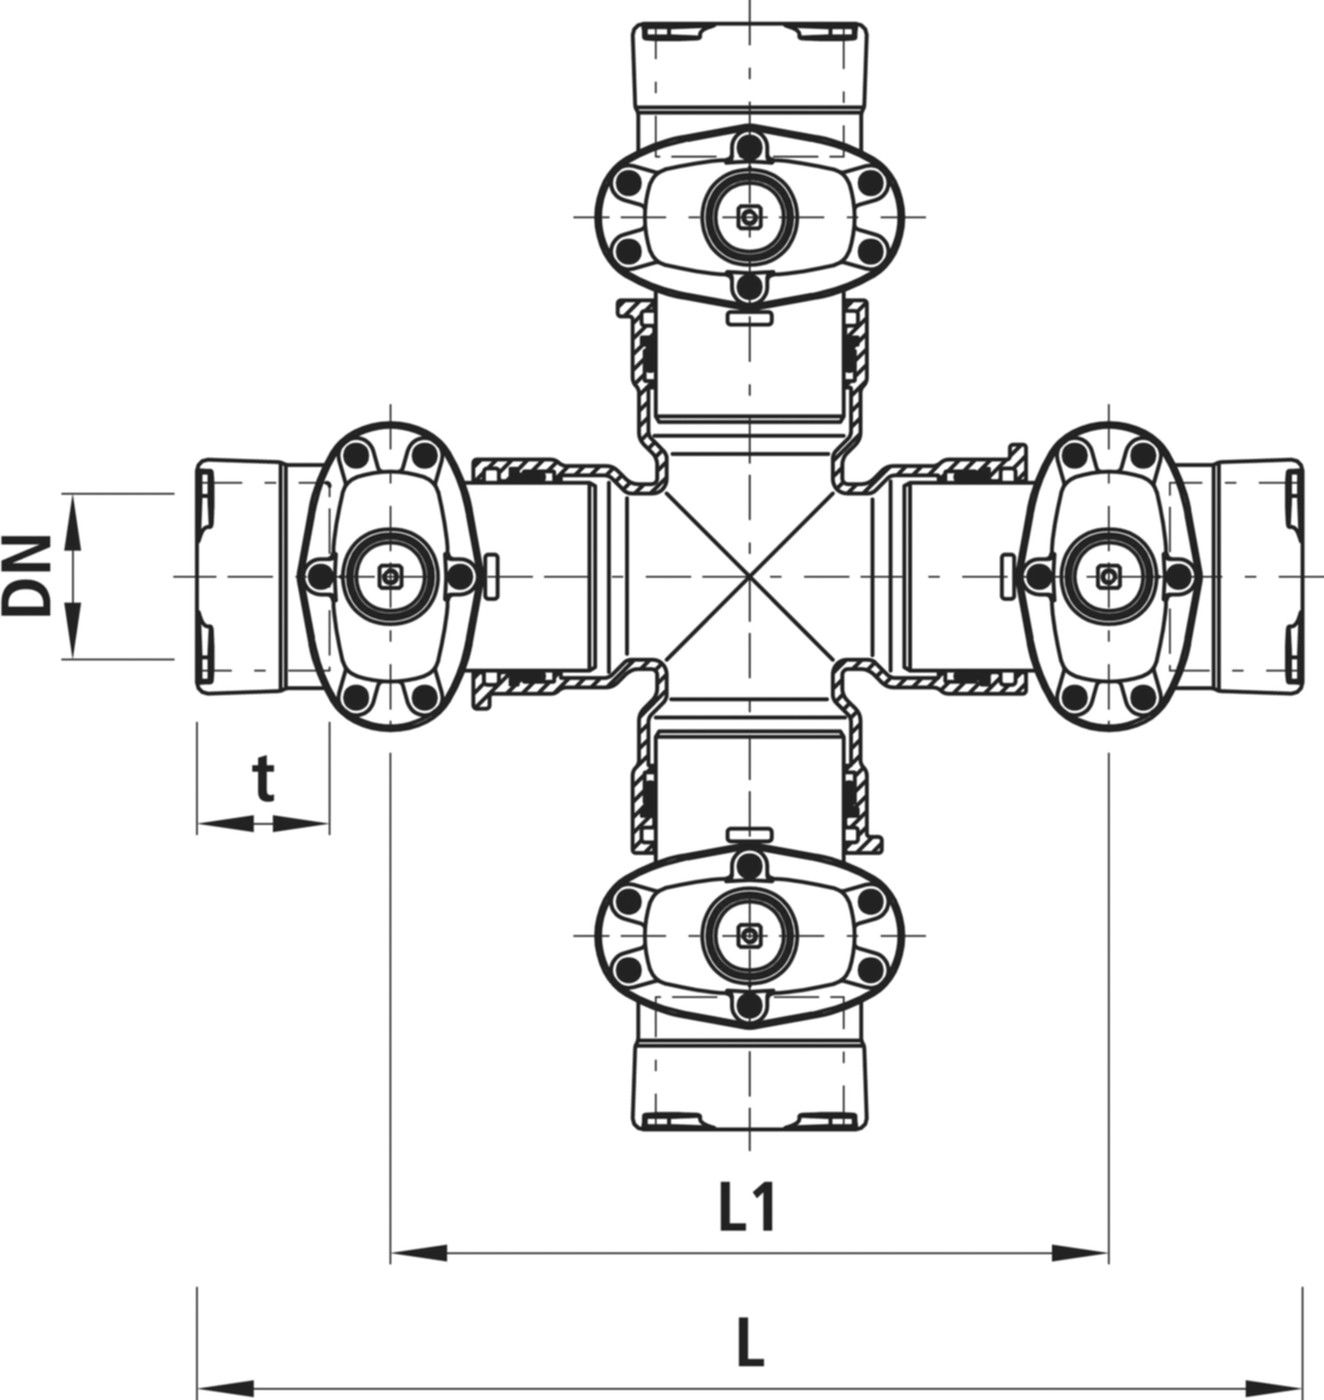 Combi-4 mit Steckmuffen Baio Gas 4435 DN 150/150 - Hawle Armaturen